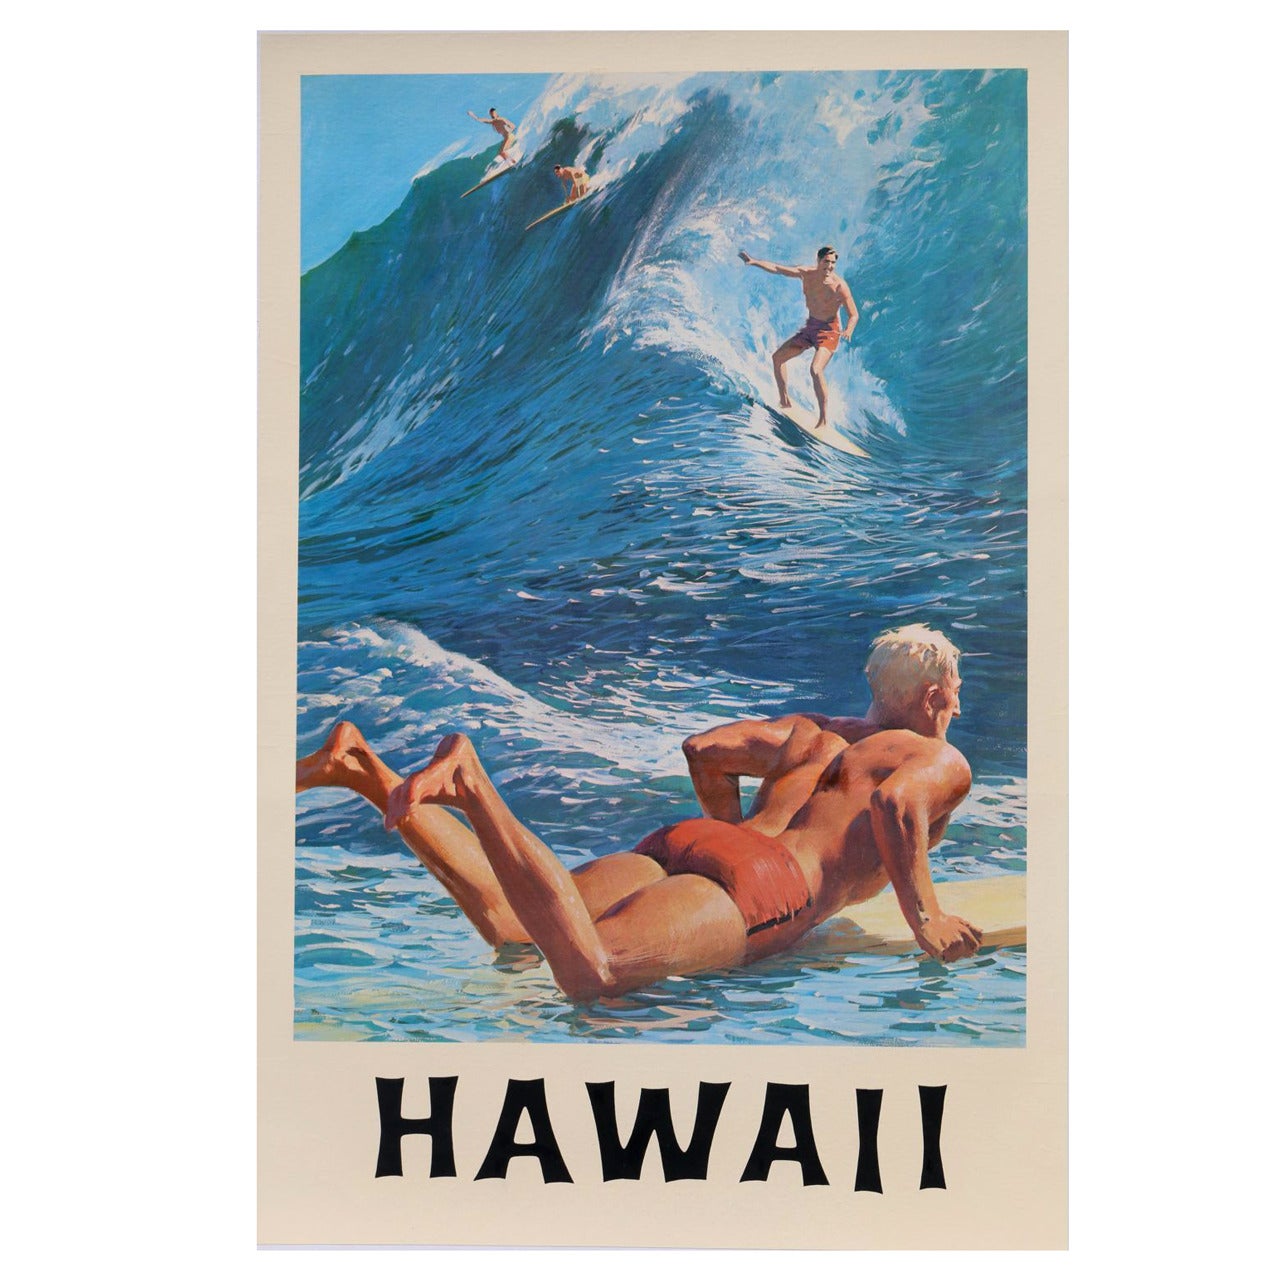 Original 1950's Hawaii Surf Poster - RARE